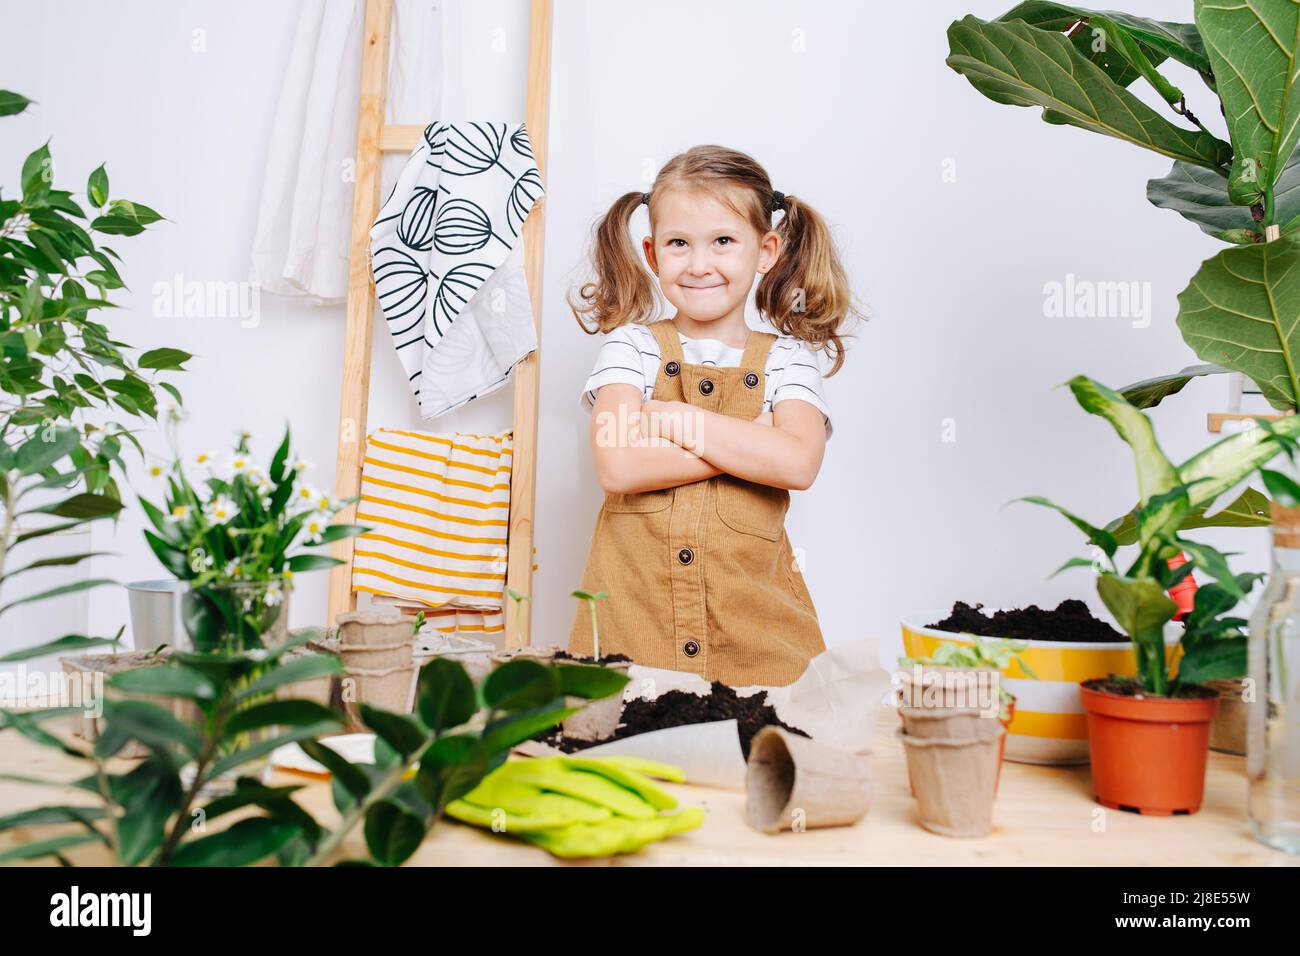 Herrliches kleines Mädchen, das neben einem Tisch mit Erde und Pflanzen steht. Über einer weißen Hauswand. Stockfoto